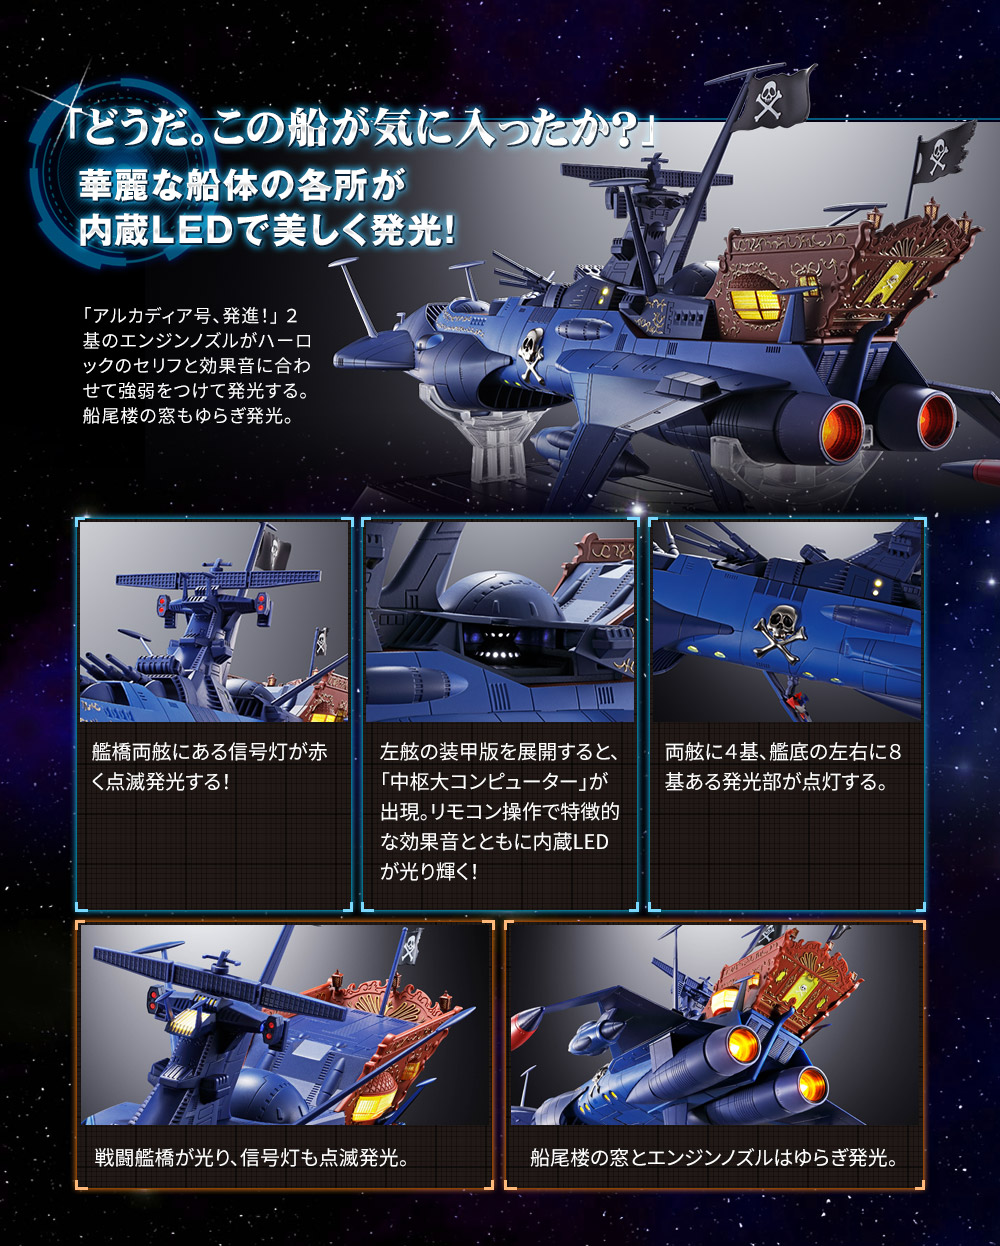 超合金魂 GX-93 宇宙海賊艦アルカディア号 スペシャルページ | 魂ウェブ